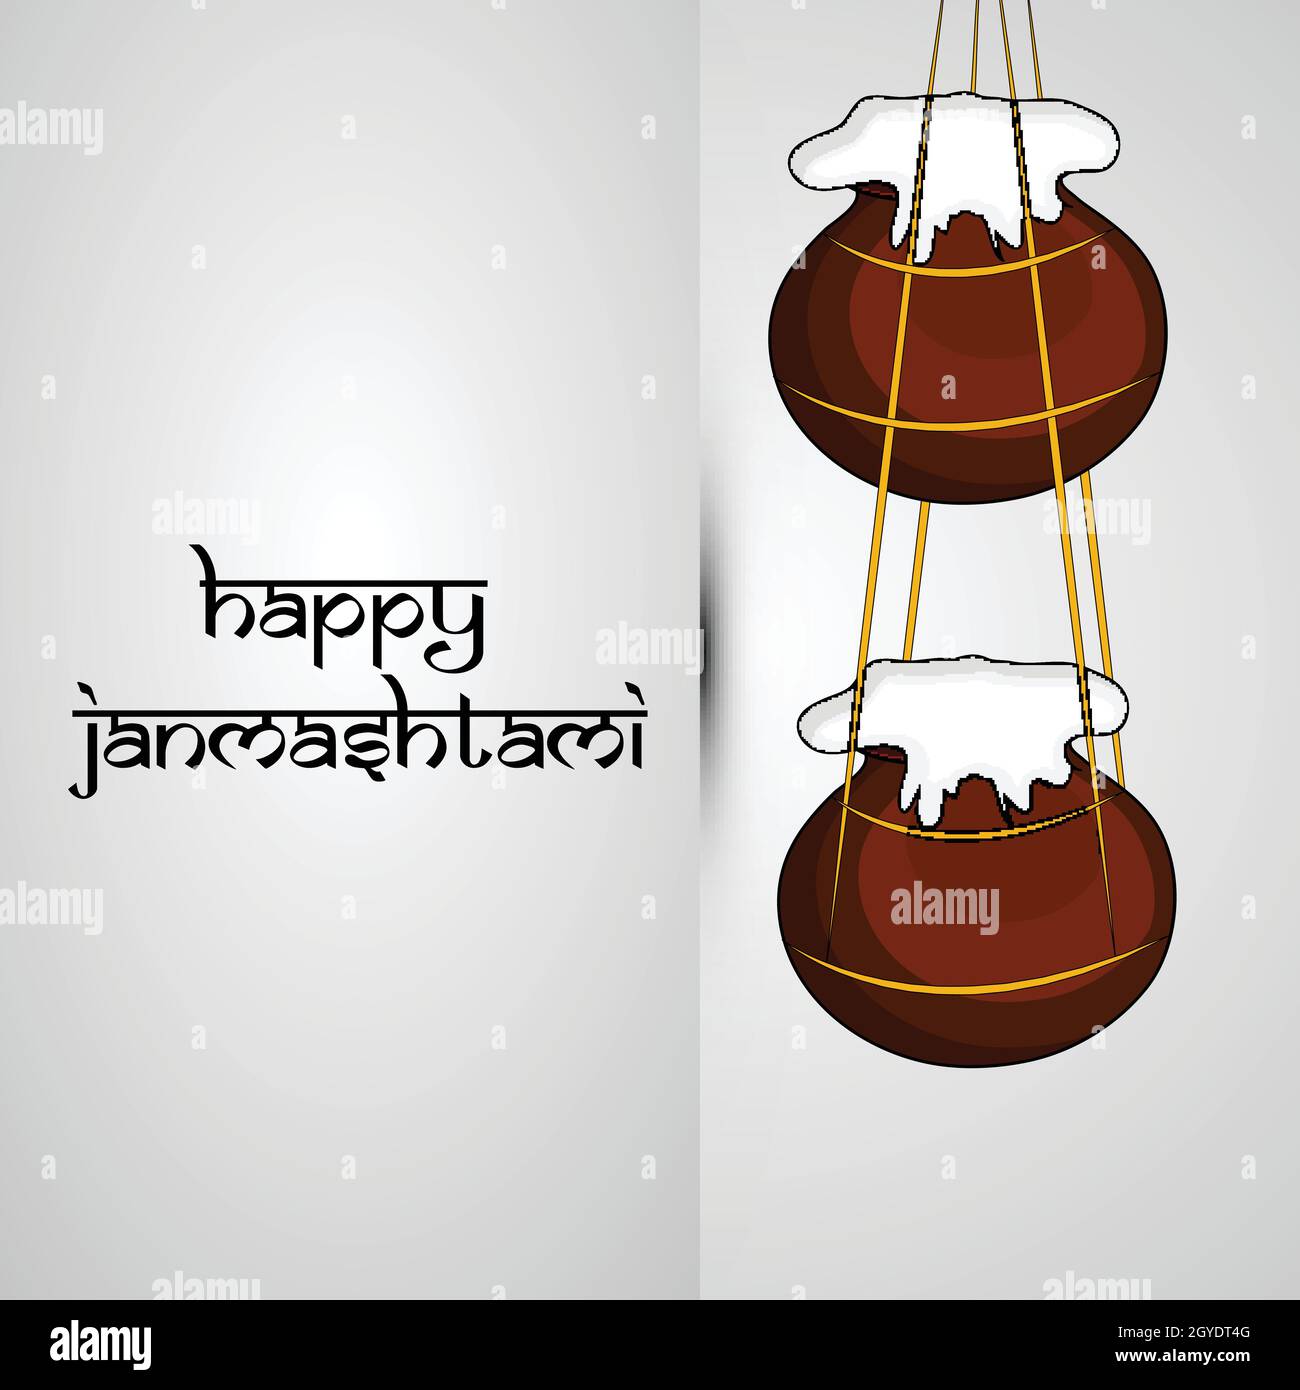 Hindu festival Janmashtami Background Stock Vector Image & Art - Alamy